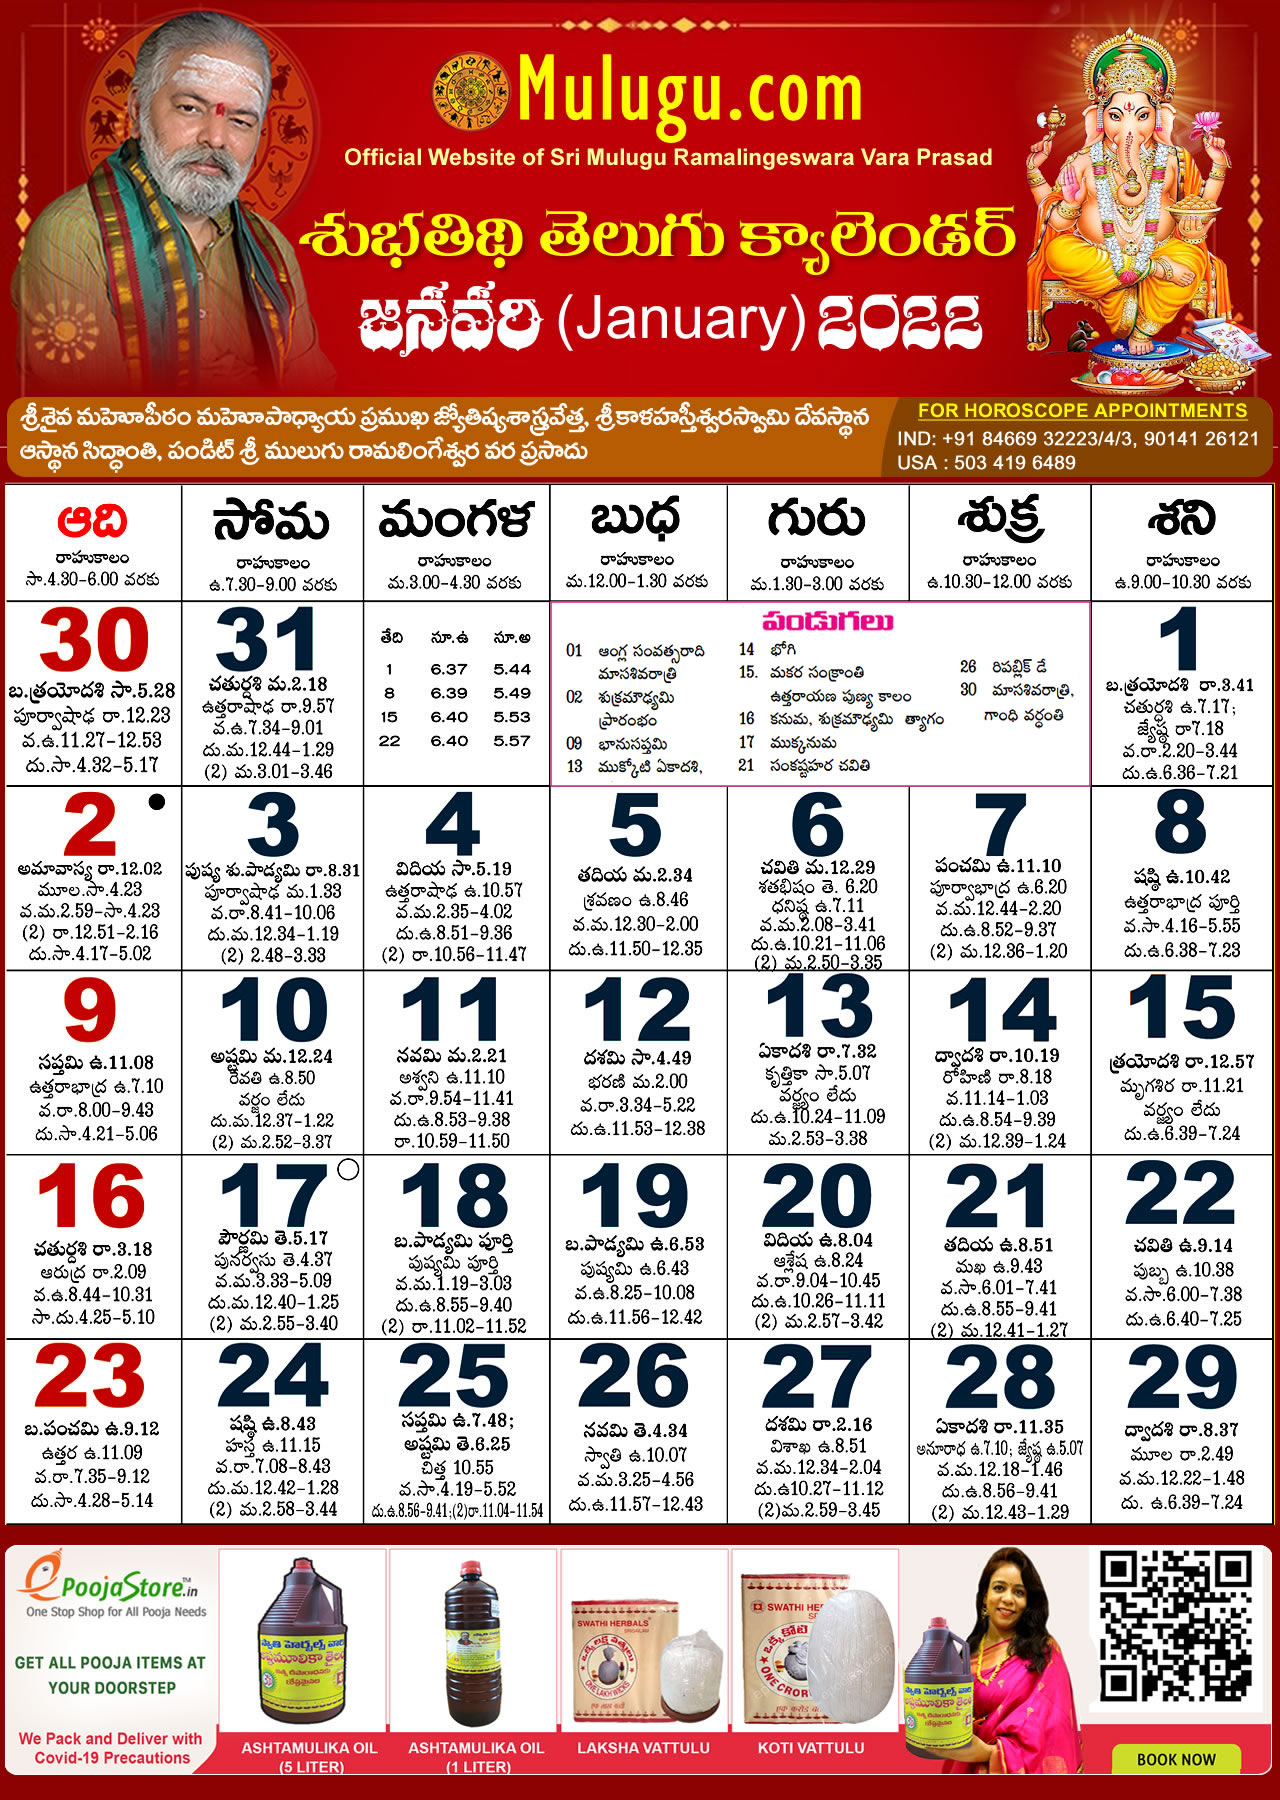 Telugu Calendar 2022 Subhathidi January Telugu Calendar 2022 | Telugu Calendar 2022 - 2023 |  Telugu Subhathidi Calendar 2022 | Calendar 2022 | Telugu Calendar 2022 |  Subhathidi Calendar 2022 - Chicago Calendar 2022 Los